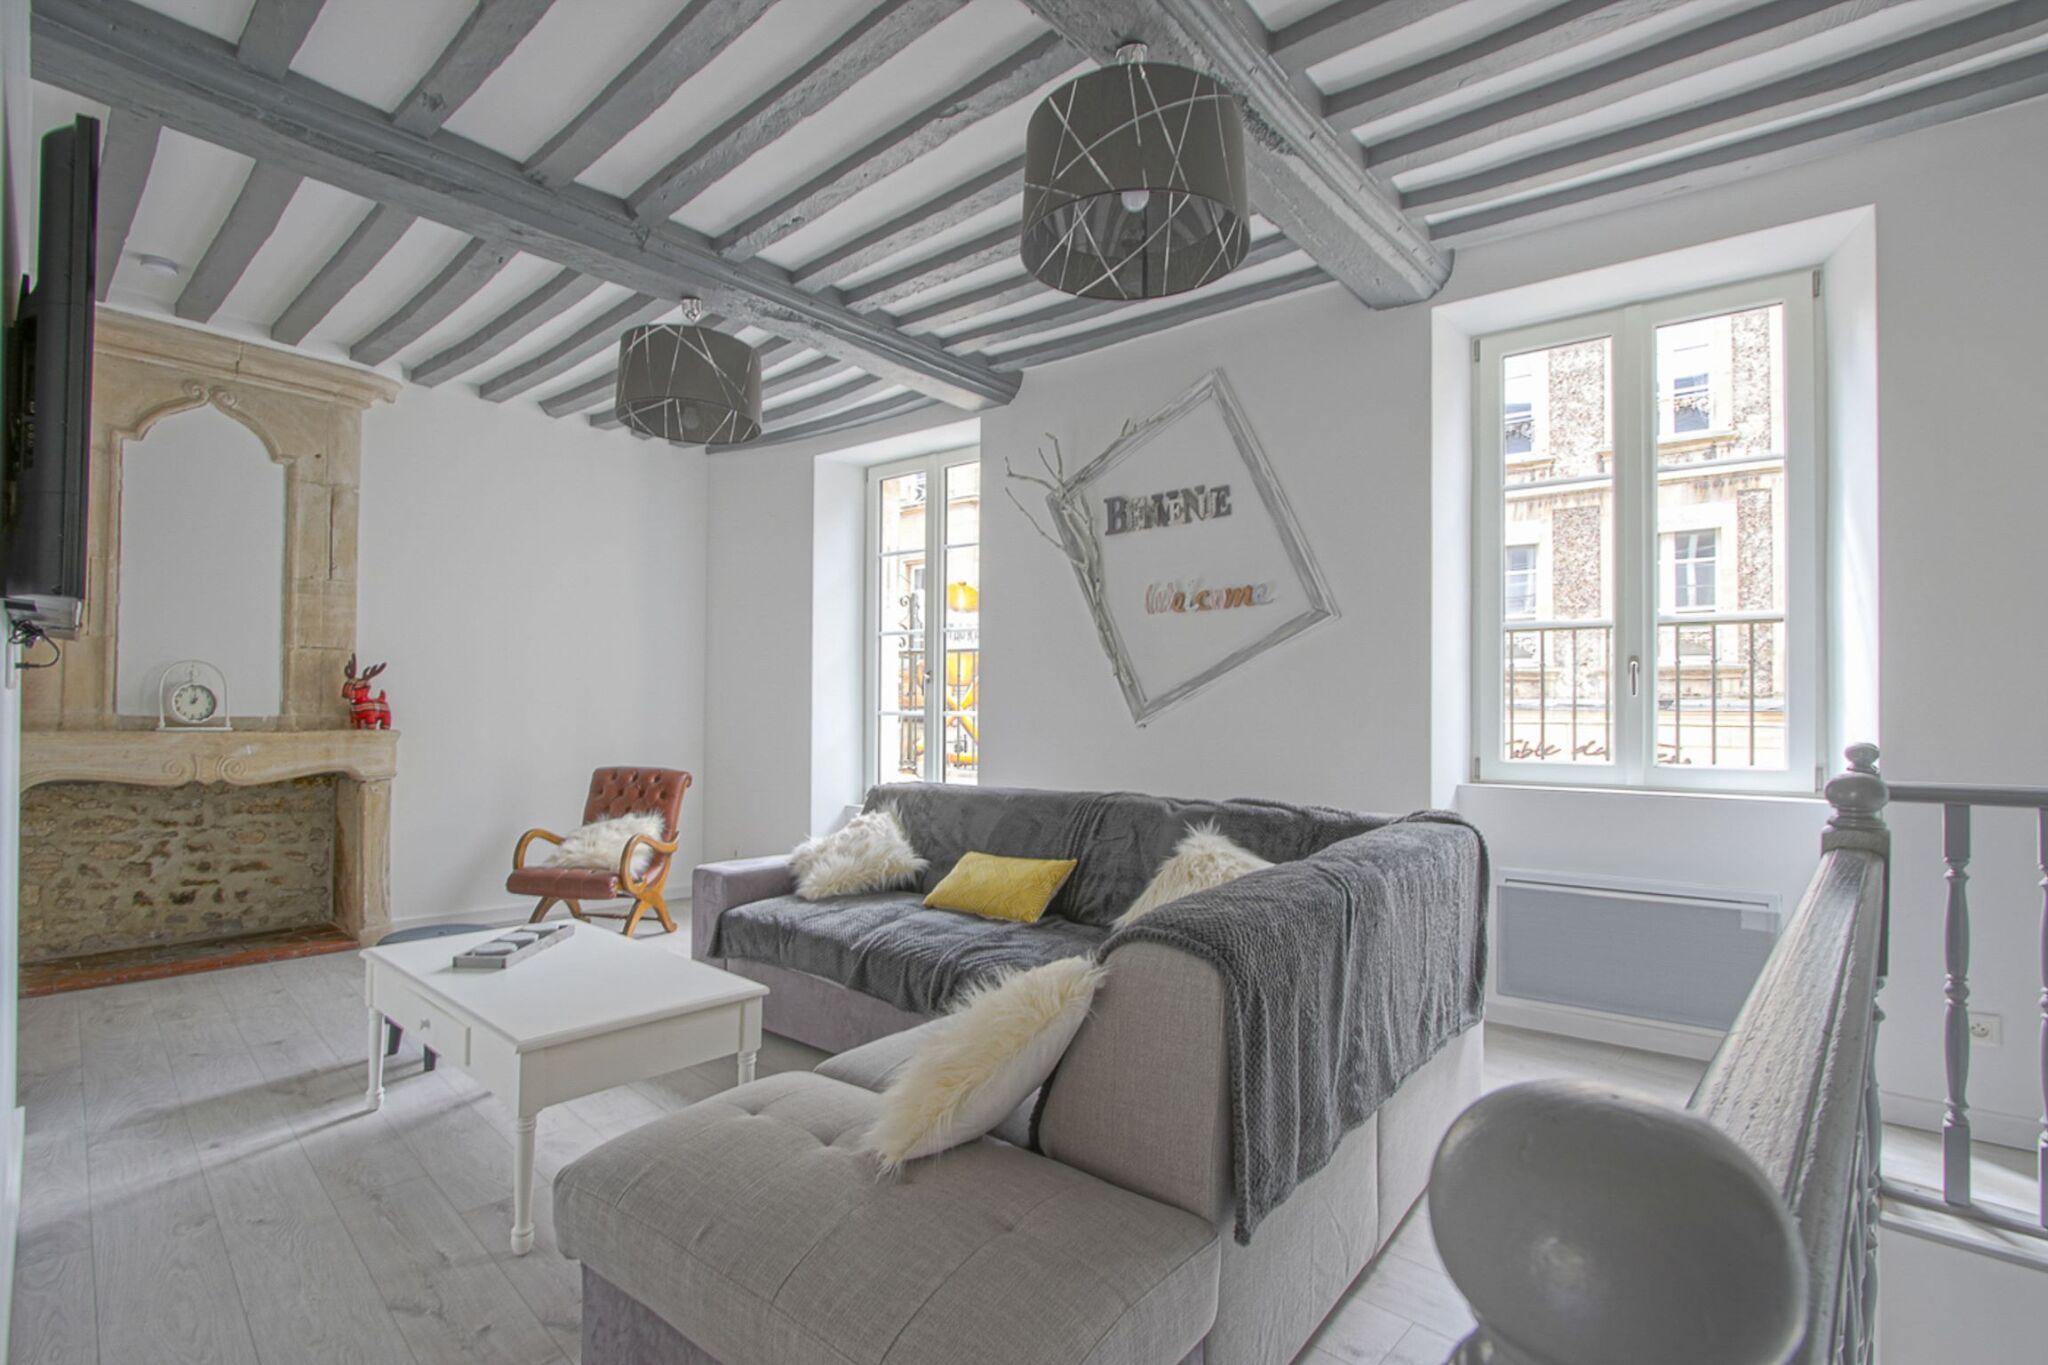 Schöne Wohnung in Bayeux. Terrasse / Wohnzimmer und Küche werden geteilt